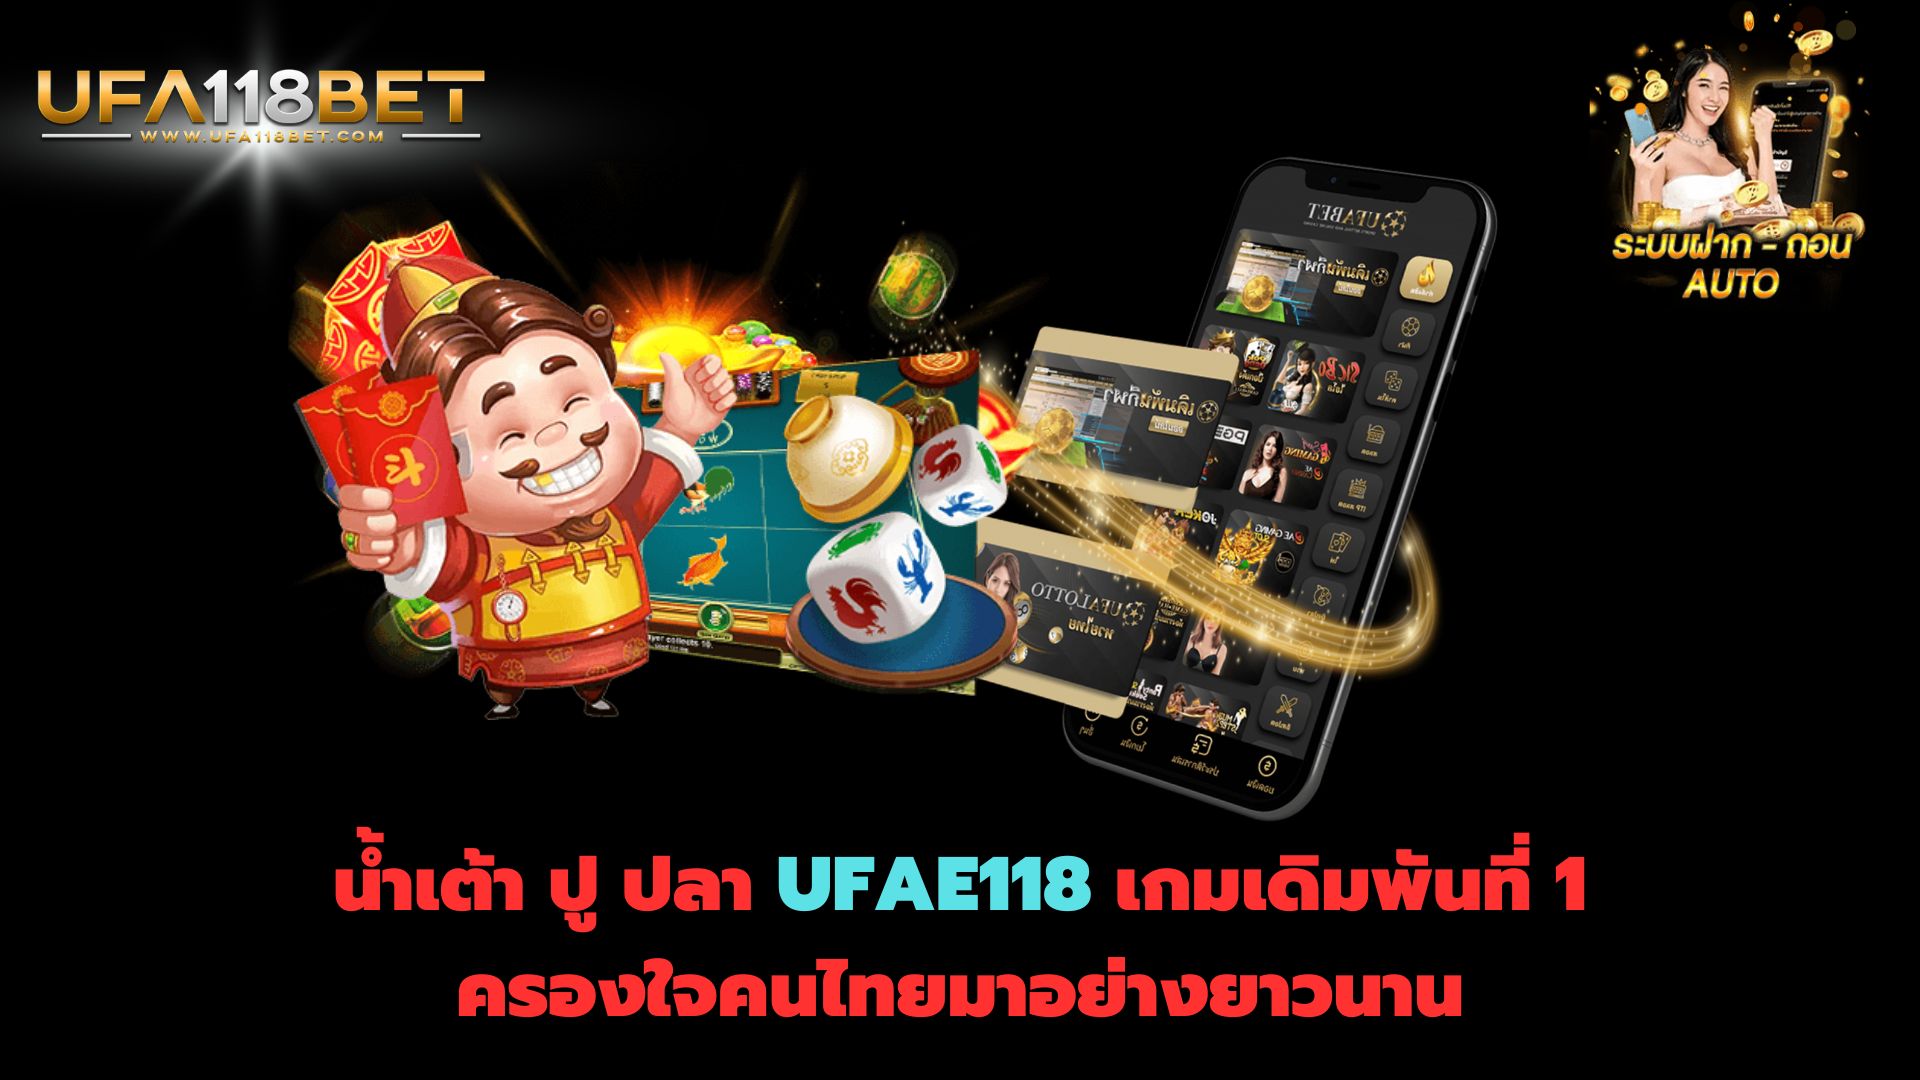 น้ำเต้า ปู ปลา UFAE118 เกมเดิมพันที่ 1 ครองใจคนไทยมาอย่างยาวนาน post thumbnail image